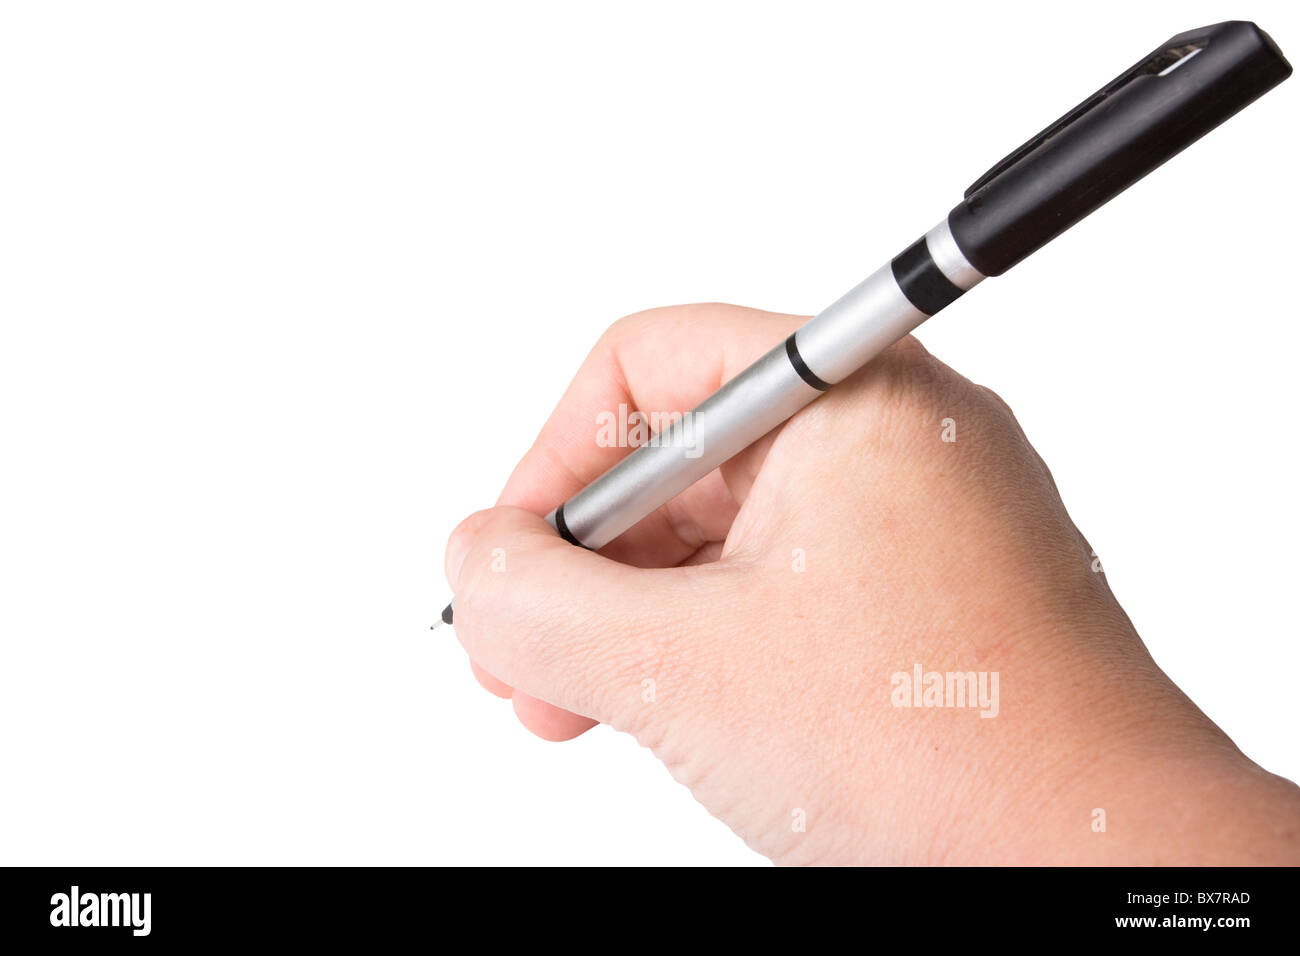 Gros plan d'une main tenant un stylo fineliner noir design graphique Banque D'Images